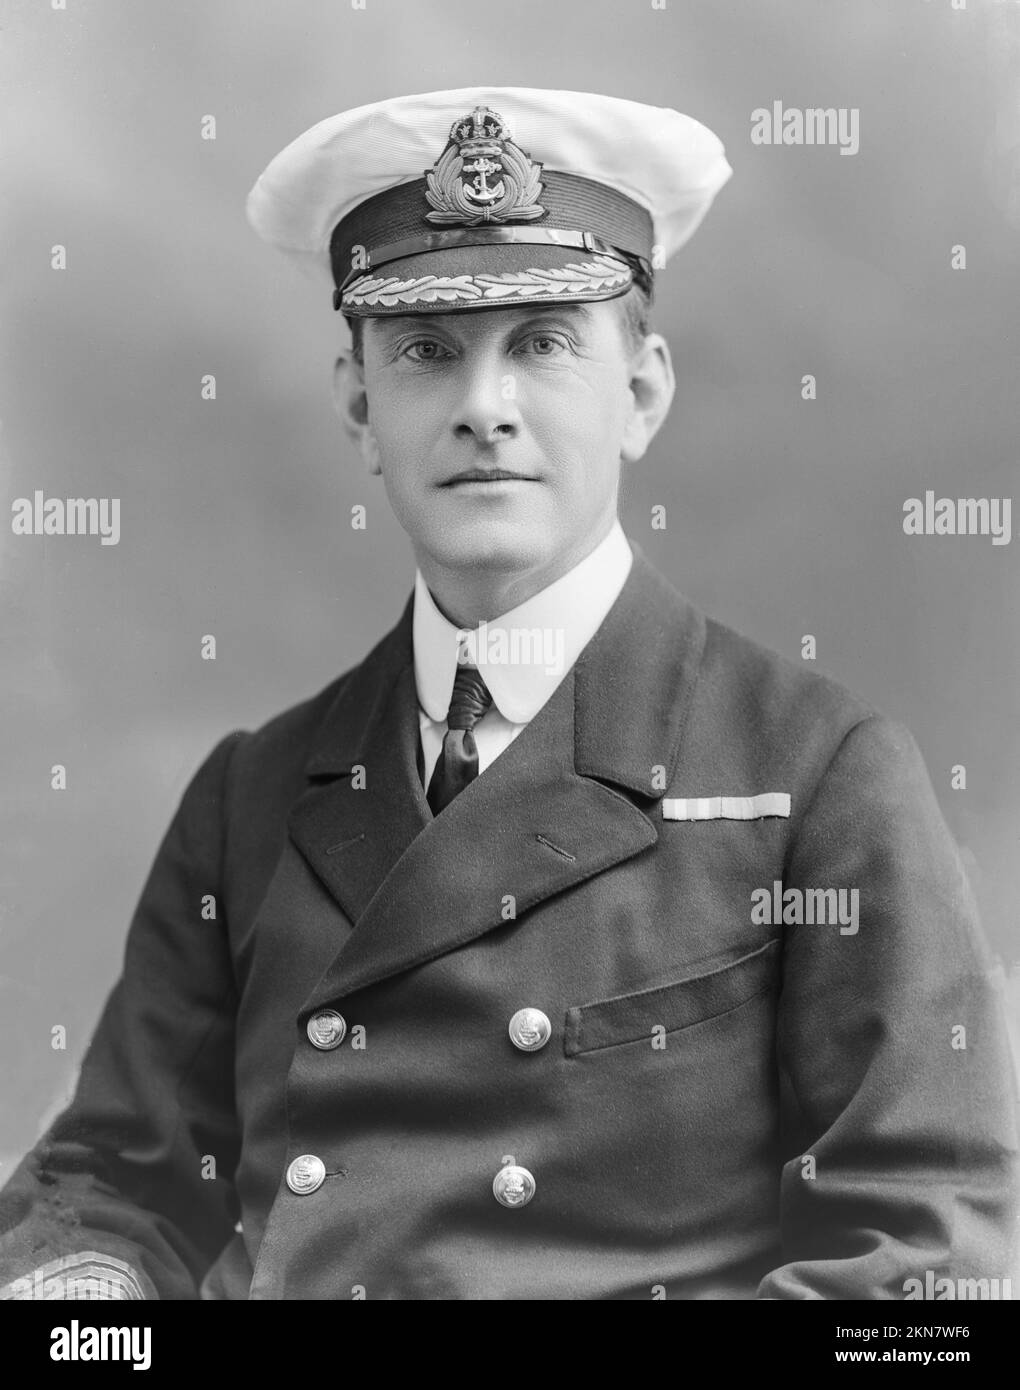 Fotografia vintage in bianco e nero scattata il 22nd luglio 1915 dal capitano Bertram Morgaunt Chambers Royal Navy. Successivamente fu promosso Ammiraglio. Foto scattata nei famosi studi londinesi di Bassano. Foto Stock